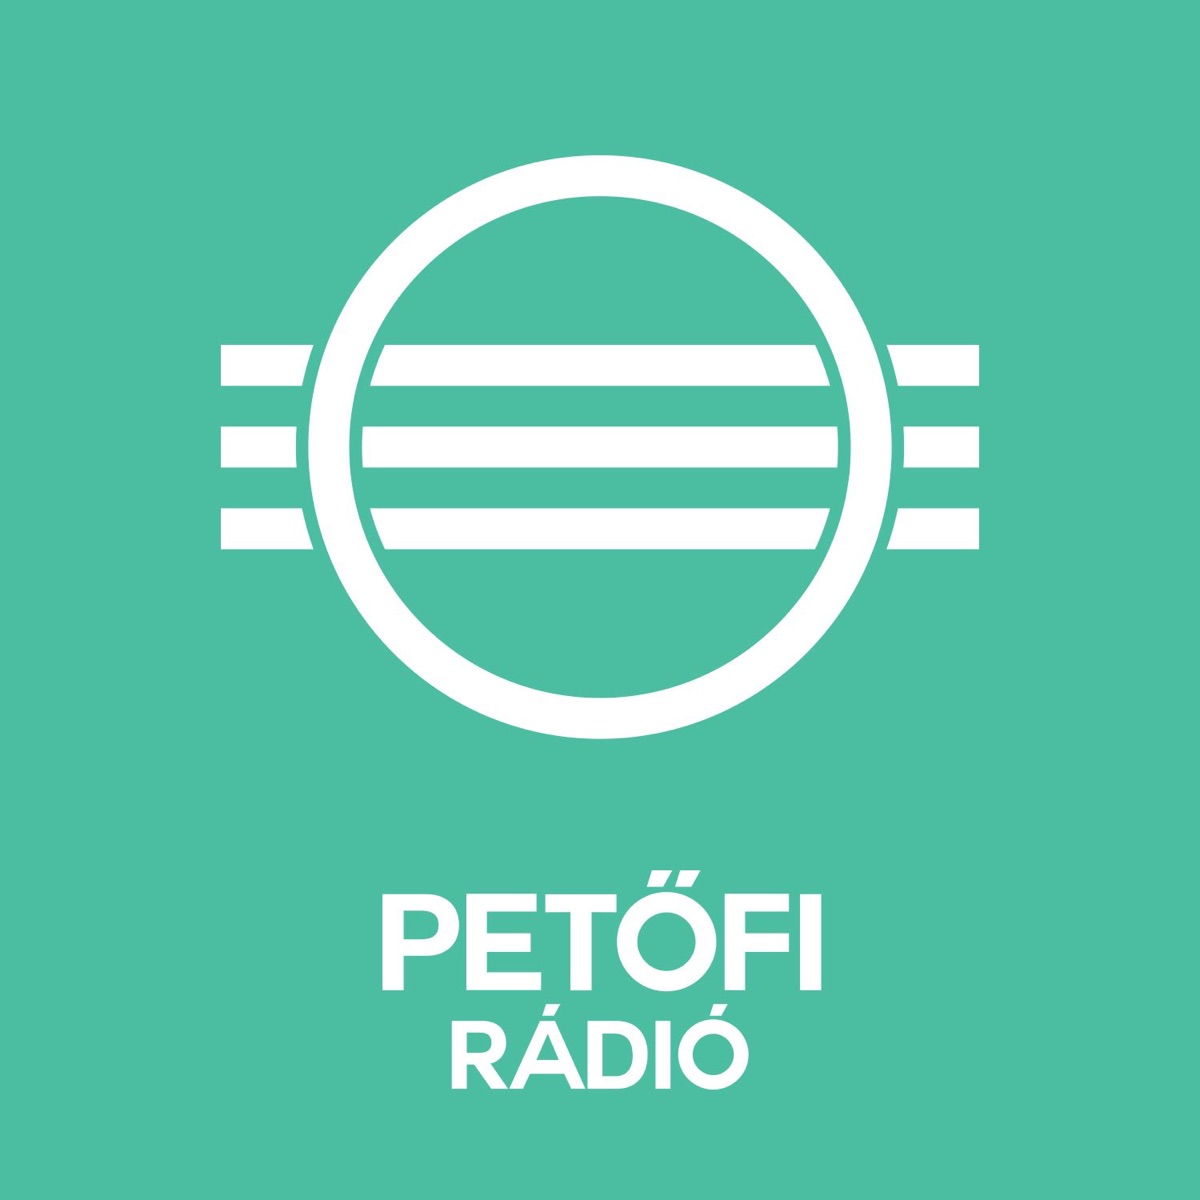 Petőfi Rádió Podcast – Podcast – Podtail